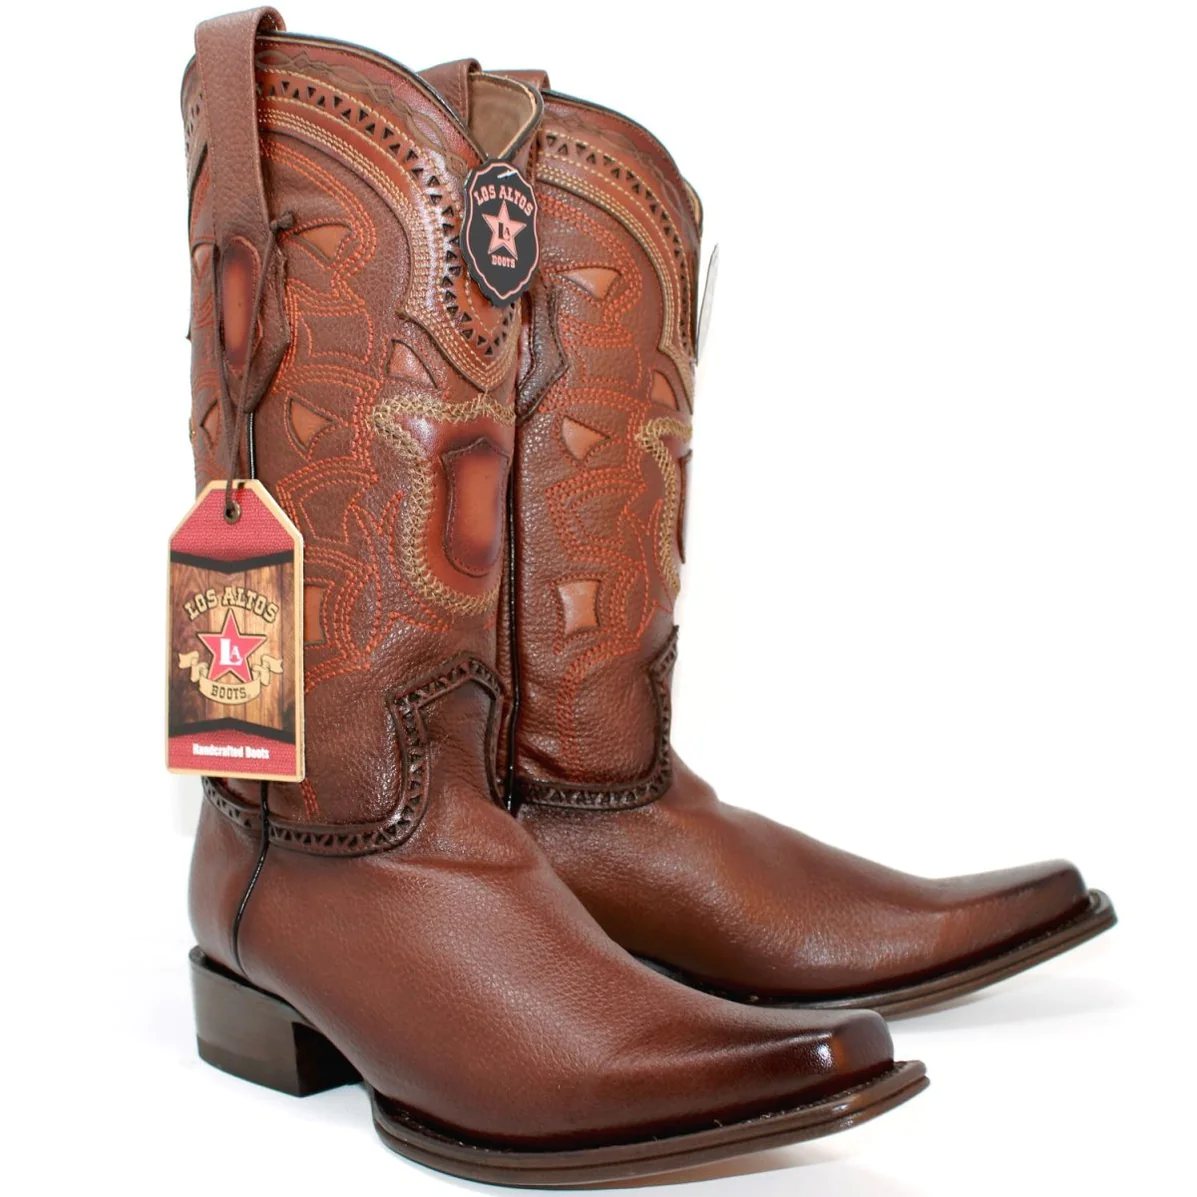 Botas de Cuero Los Altos Boots $239.99 en varios colores con ENVIO GRATIS. Para comprar llama al 323-312-3317 o haz click en este link: caballobronco.com/collections/bo… #caballobronco #botasvaqueras #cowboyboots #losaltosboots #botaslosaltos #losaltosbootsonsale #westernboots #botines